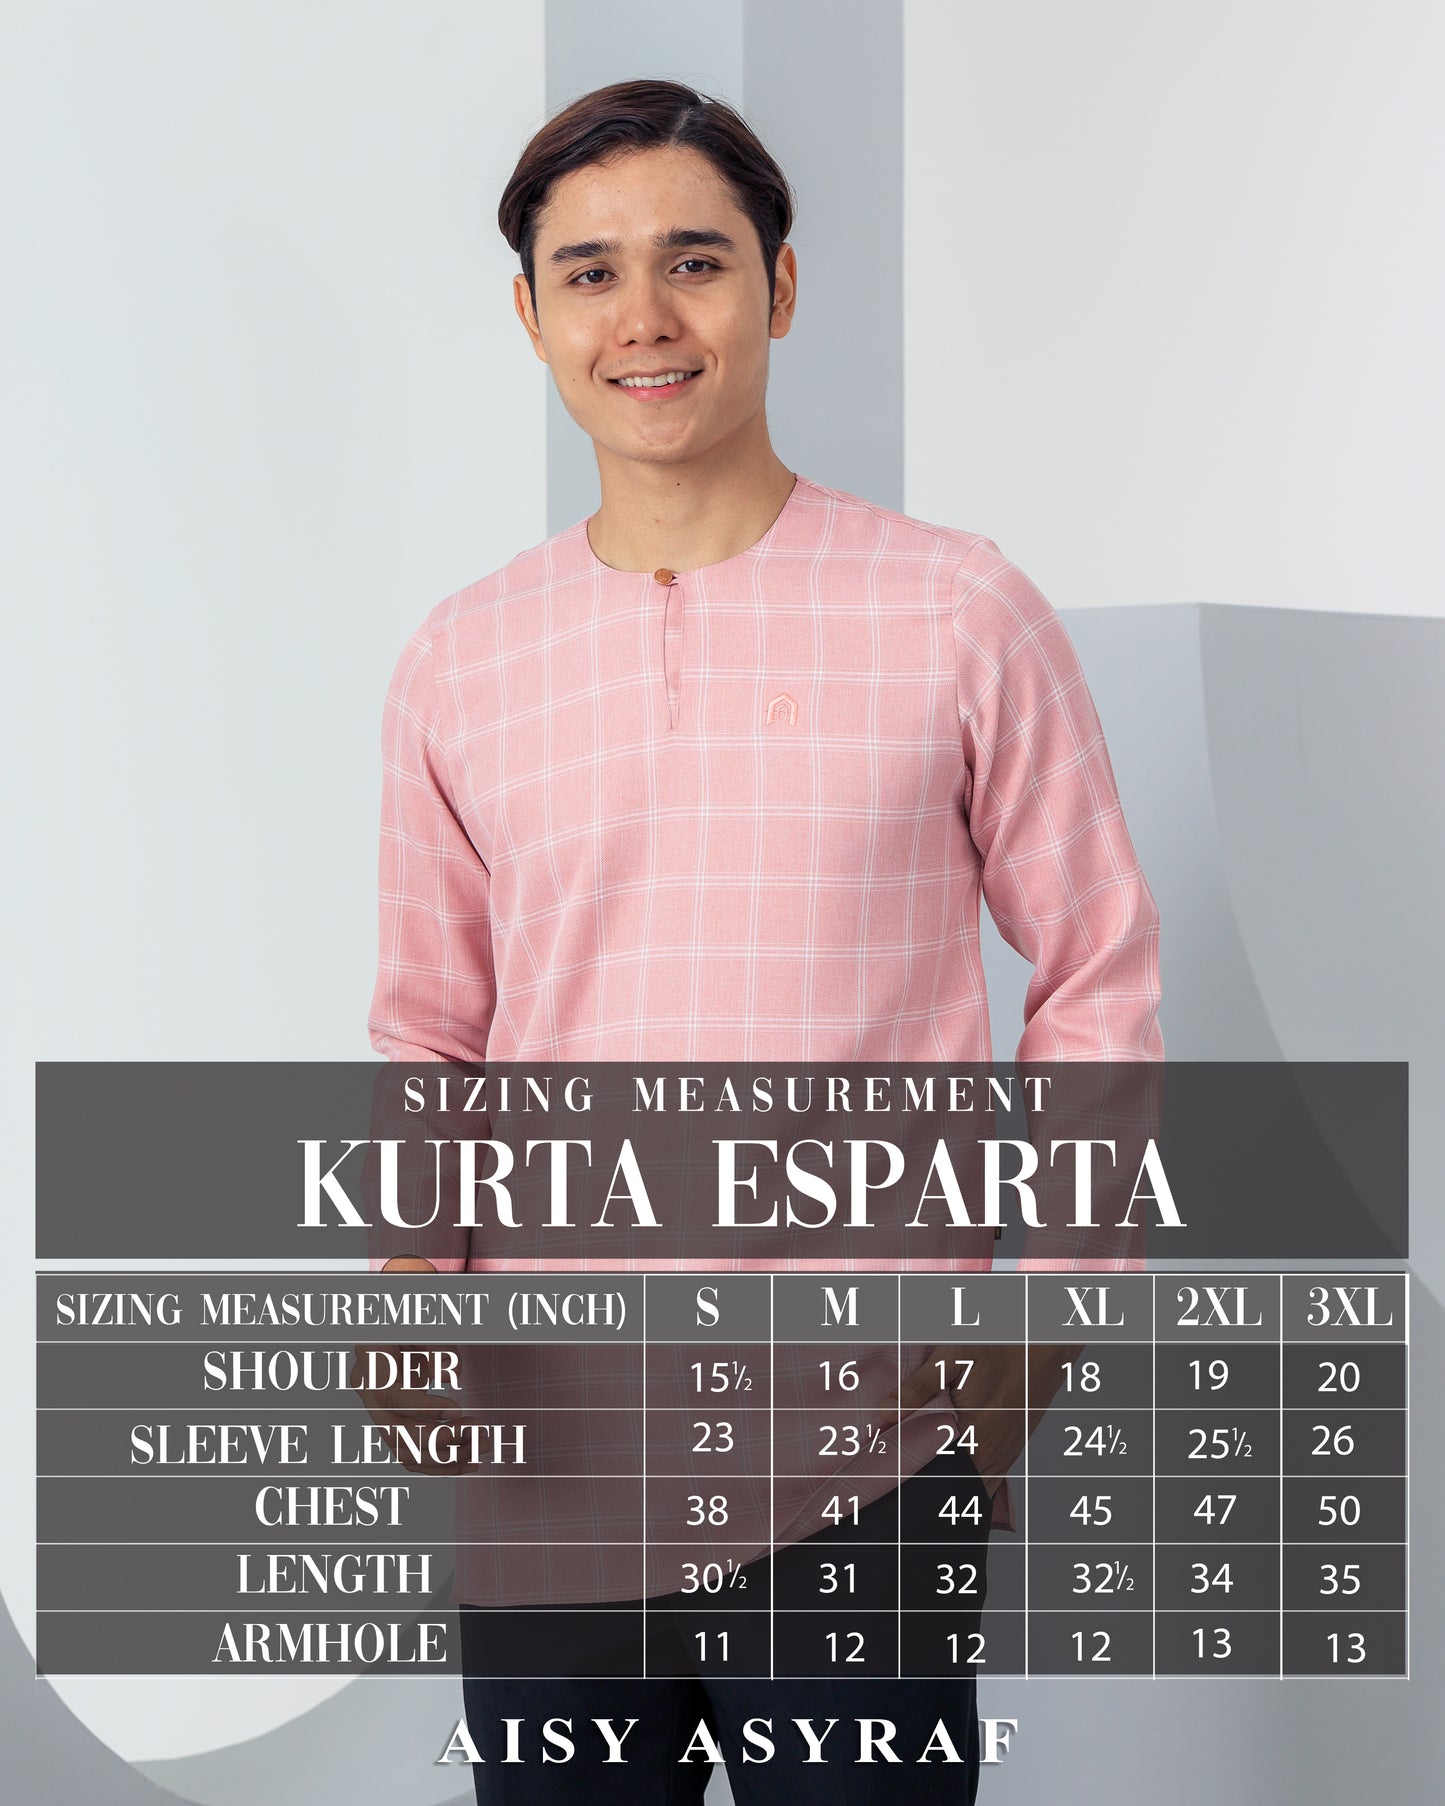 Kurta Esparta - Dusty Pink